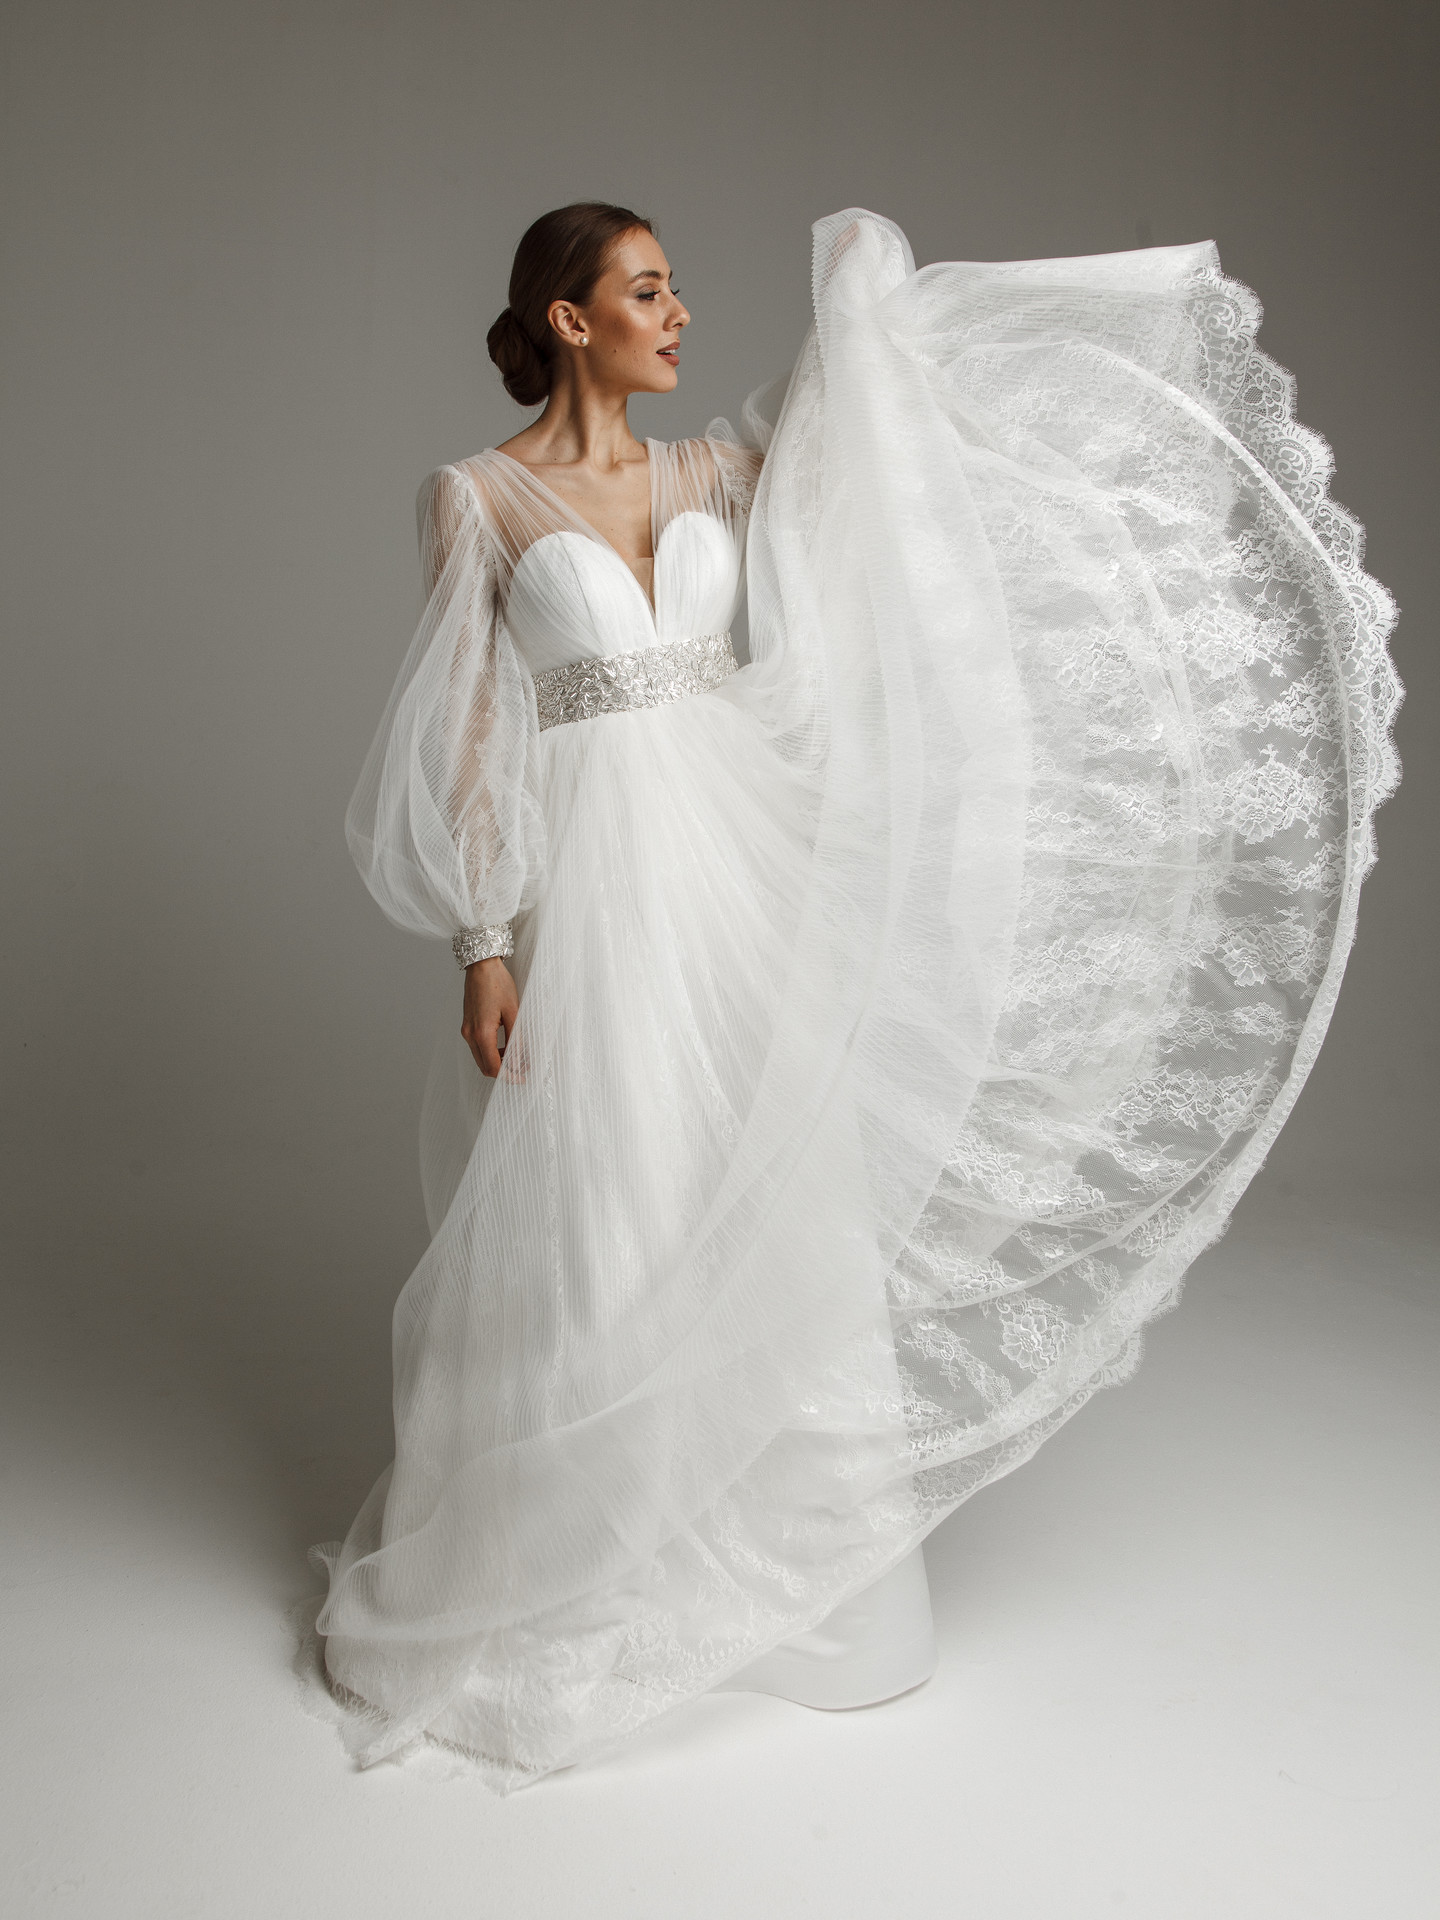 Платье Лорет, 2021, одежда, платье, свадебное, молочно-белый, кружево, А-силуэт, вышивка, рукава, архив